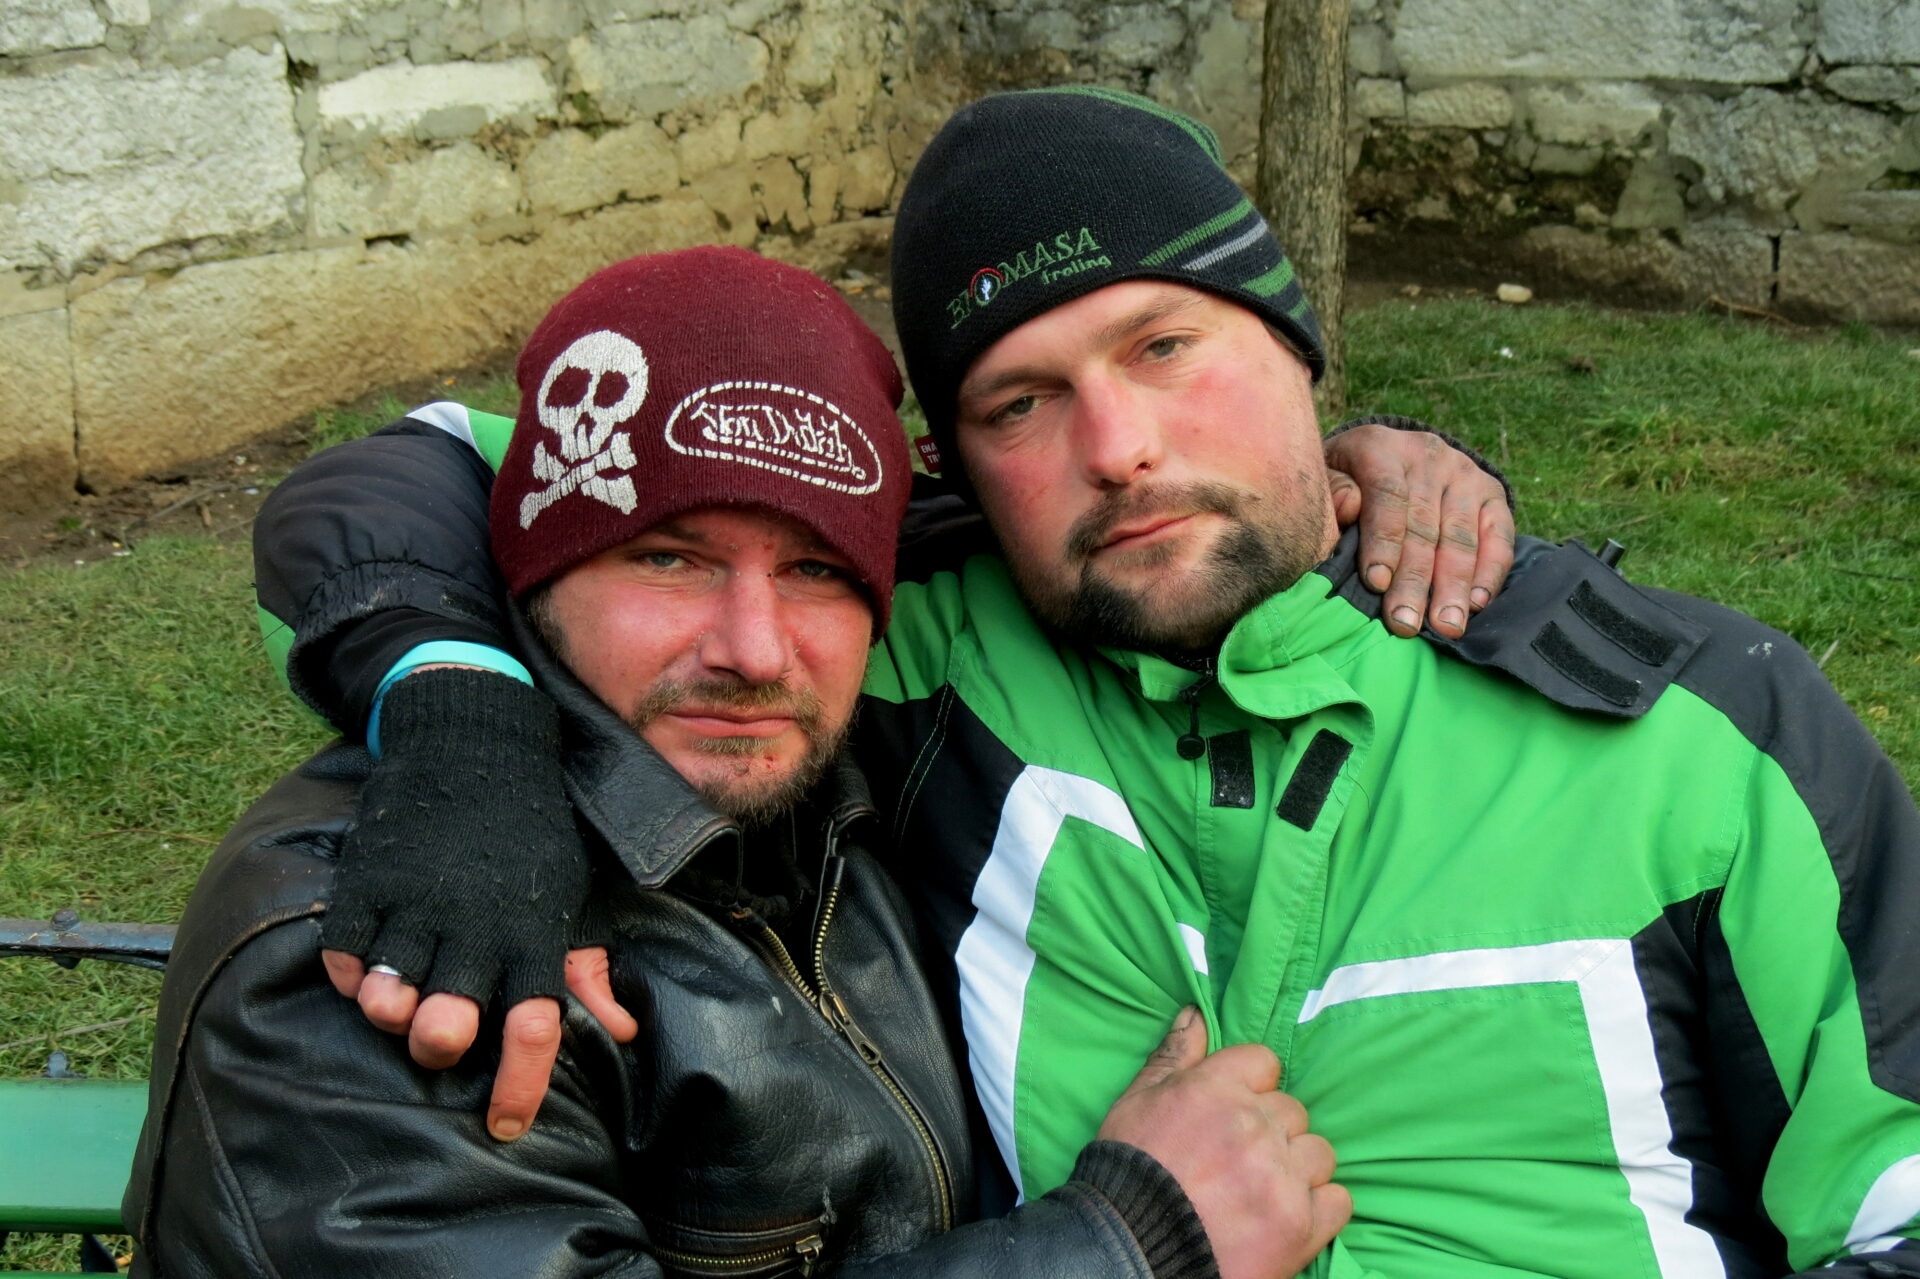 KRALJI ULICE 4 Homeless in Slovenia